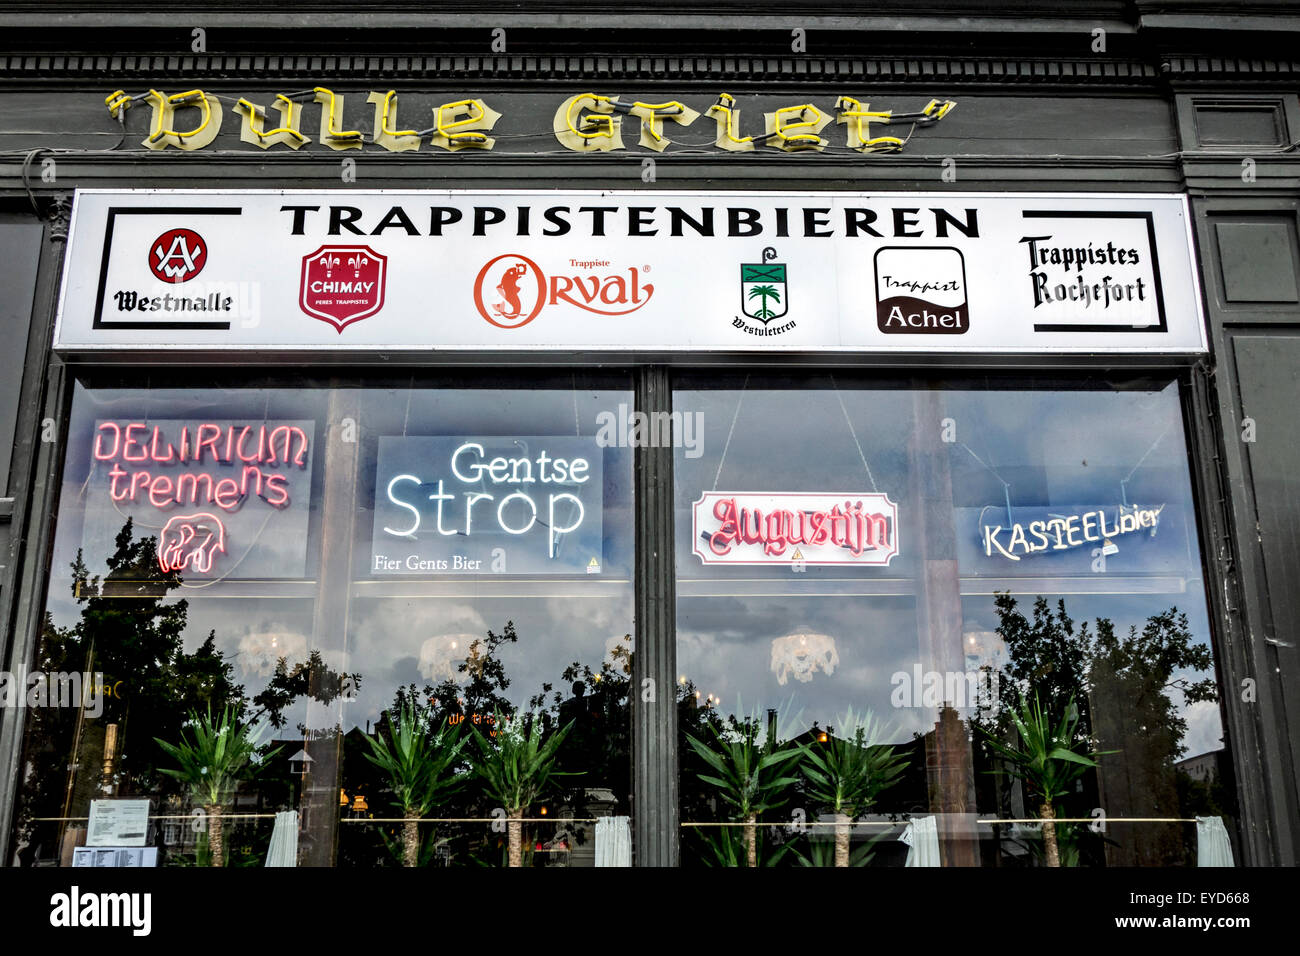 Le pub Dulle Griet offrant une grande variété de bières belges dans la ville de Gand, Belgique Banque D'Images